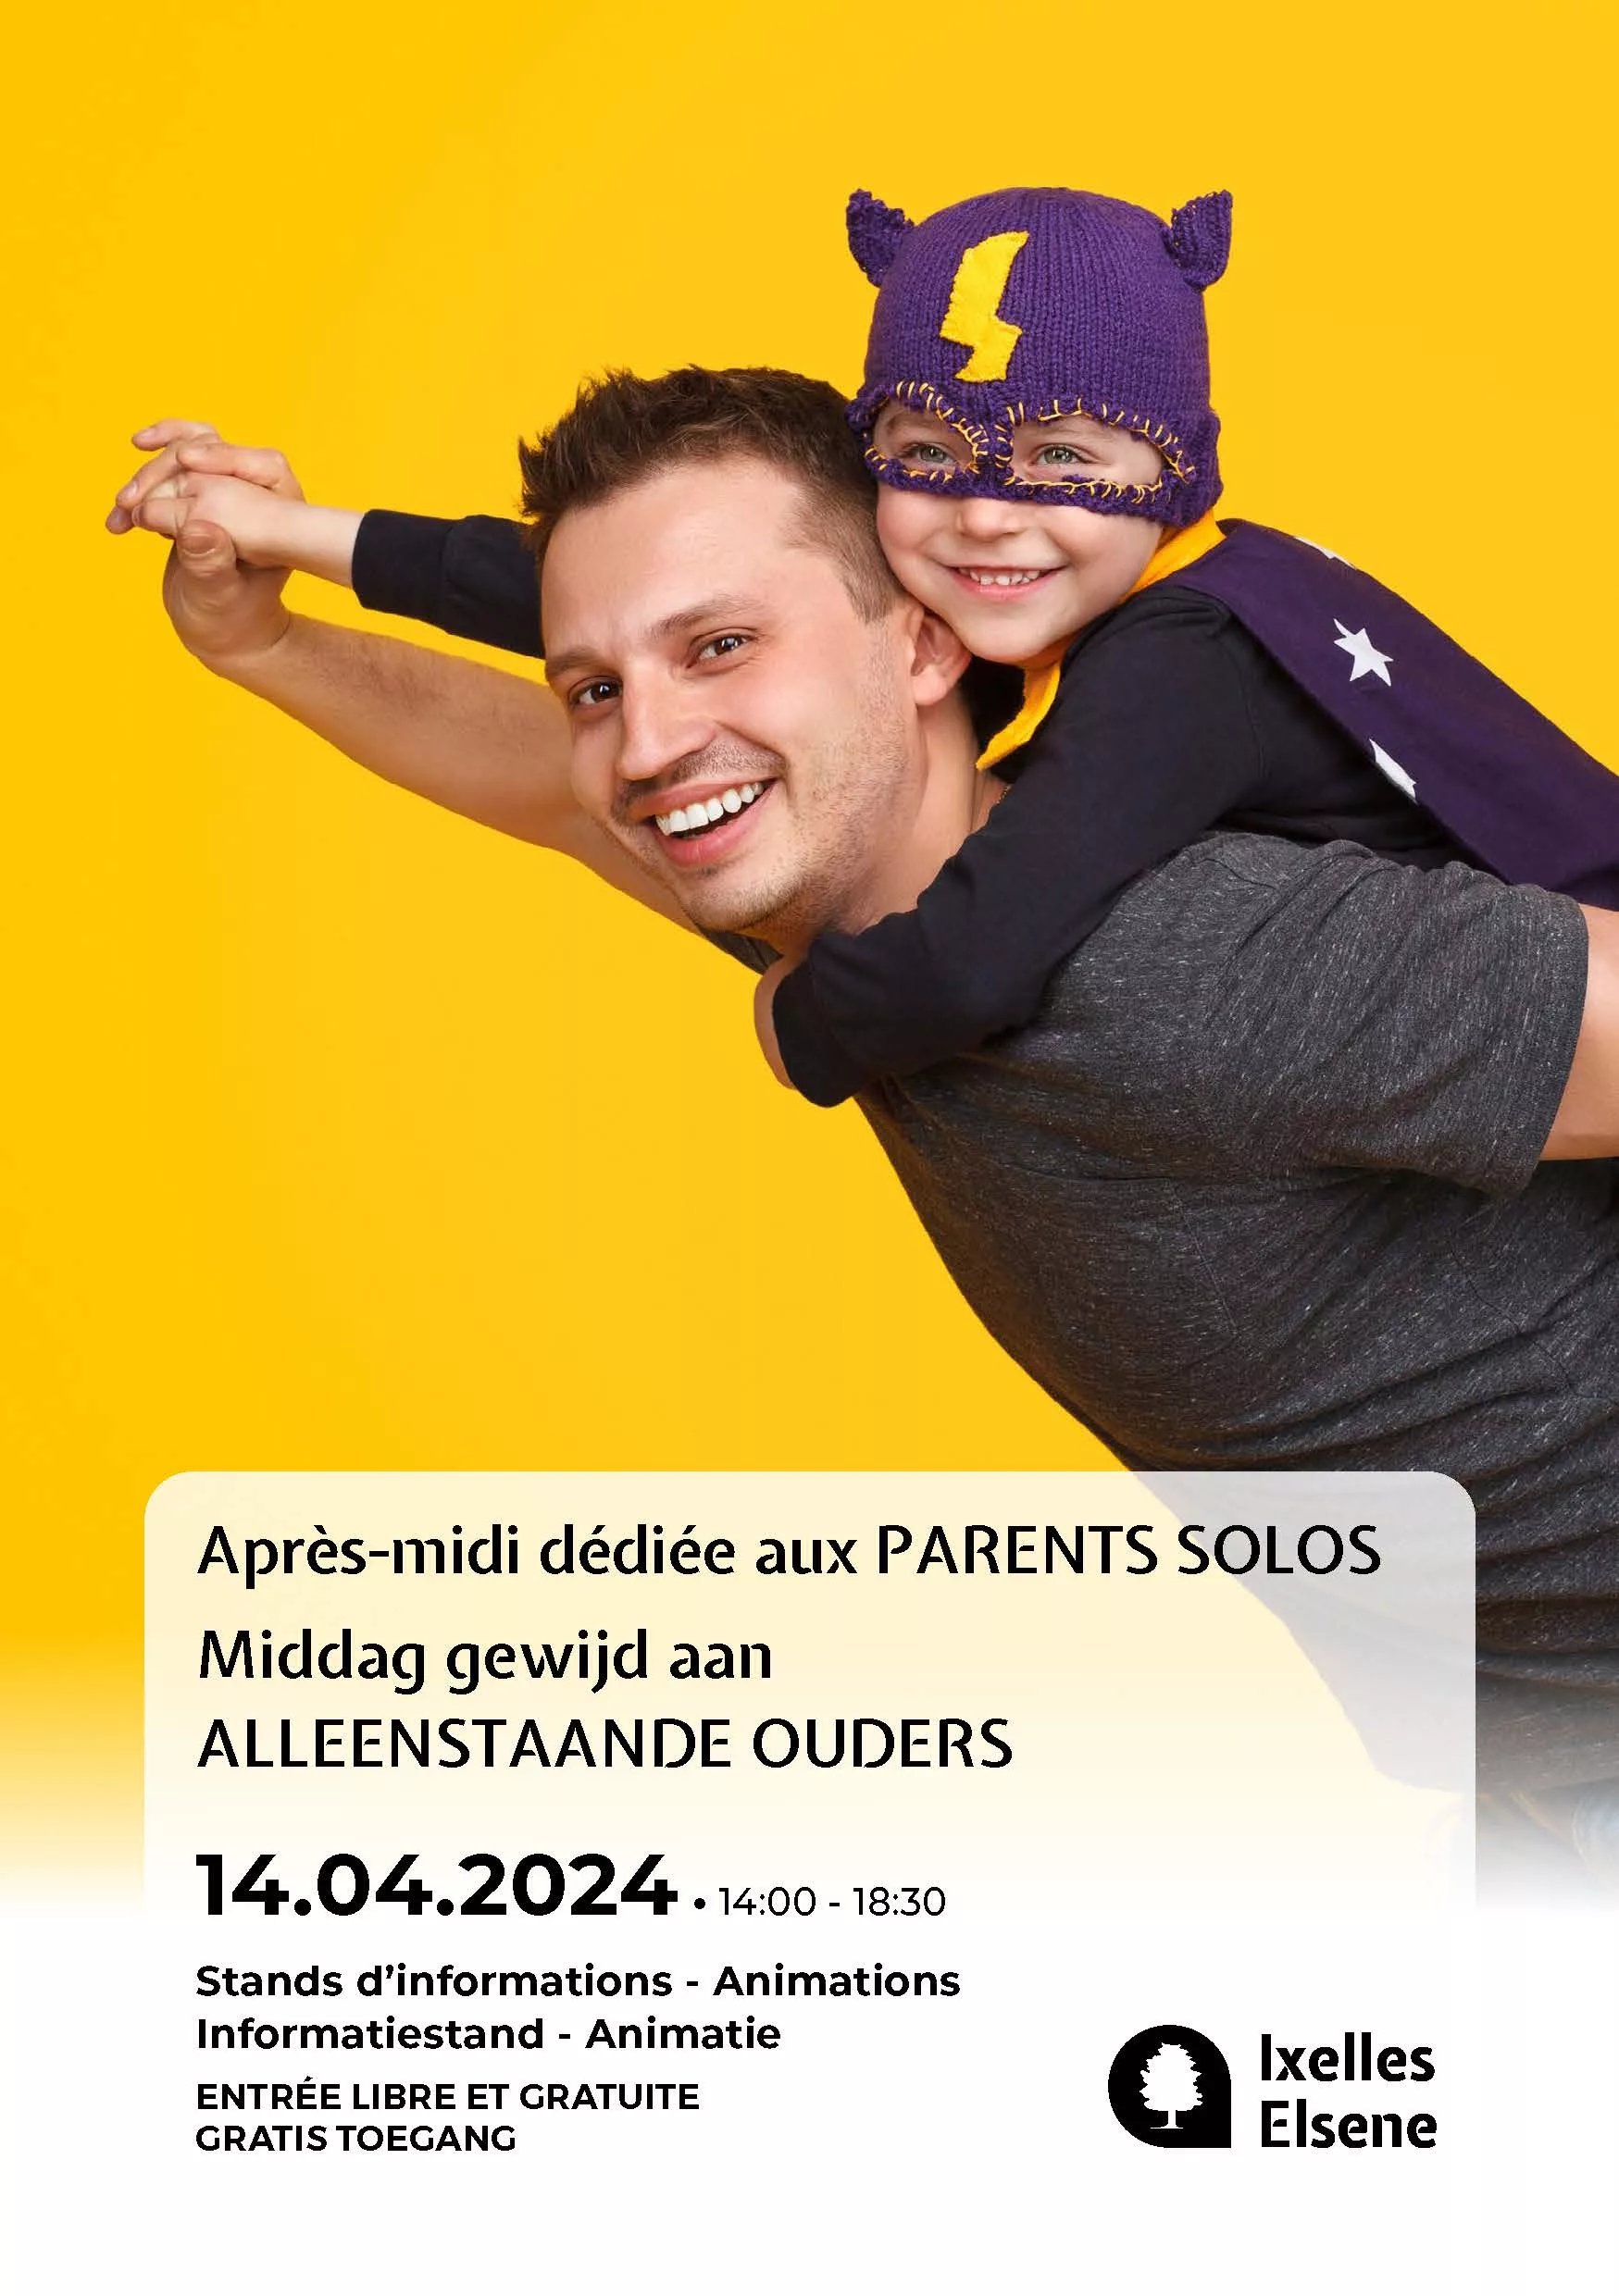 Soutien aux familles monoparentales, Après-midi dédiée aux parents solos à Ixelles